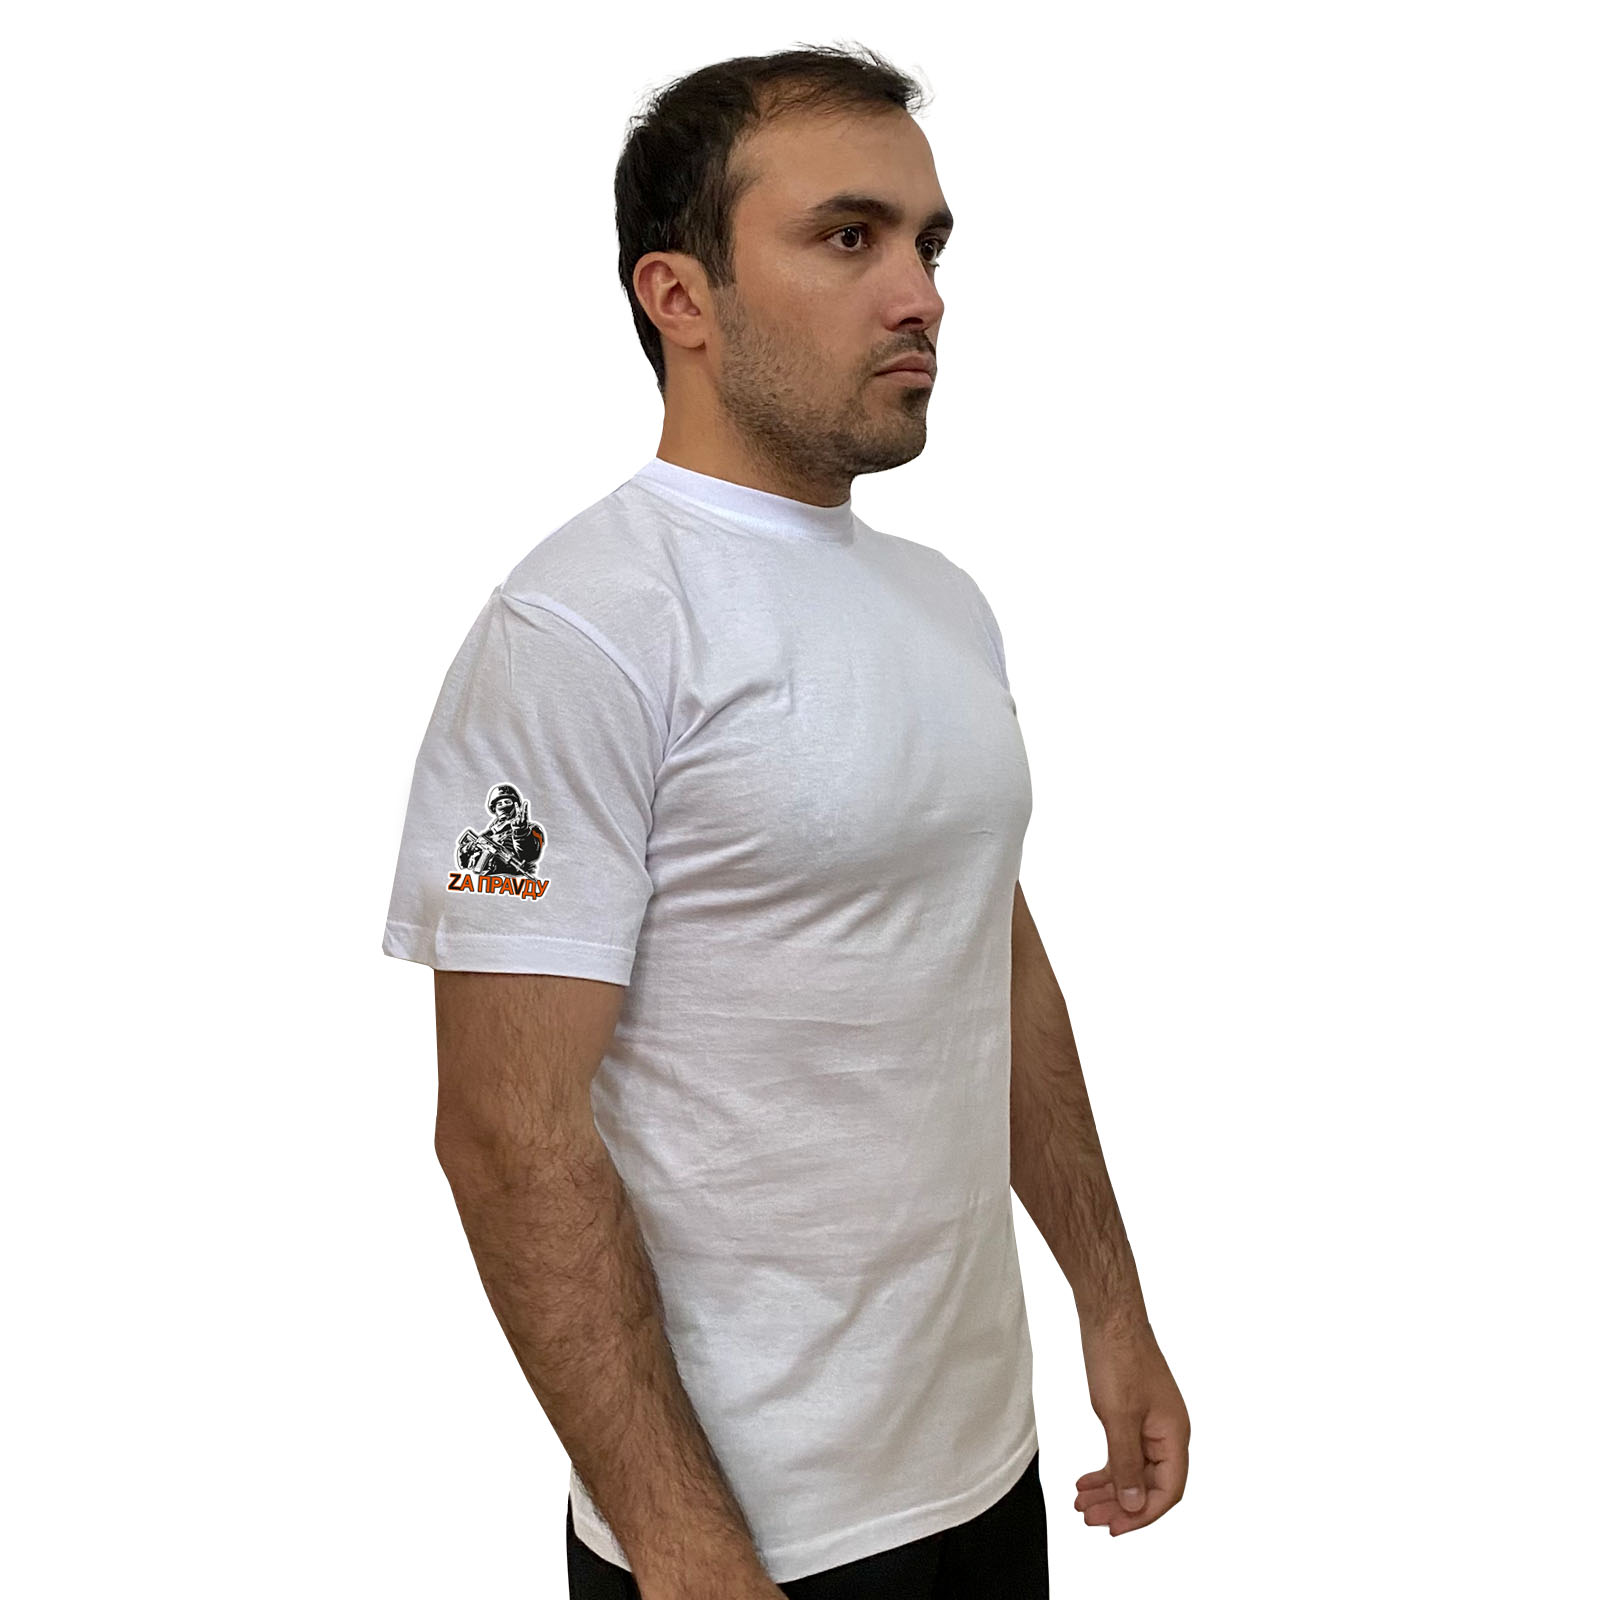 Белая футболка "Zа праVду" с трансфером на рукаве